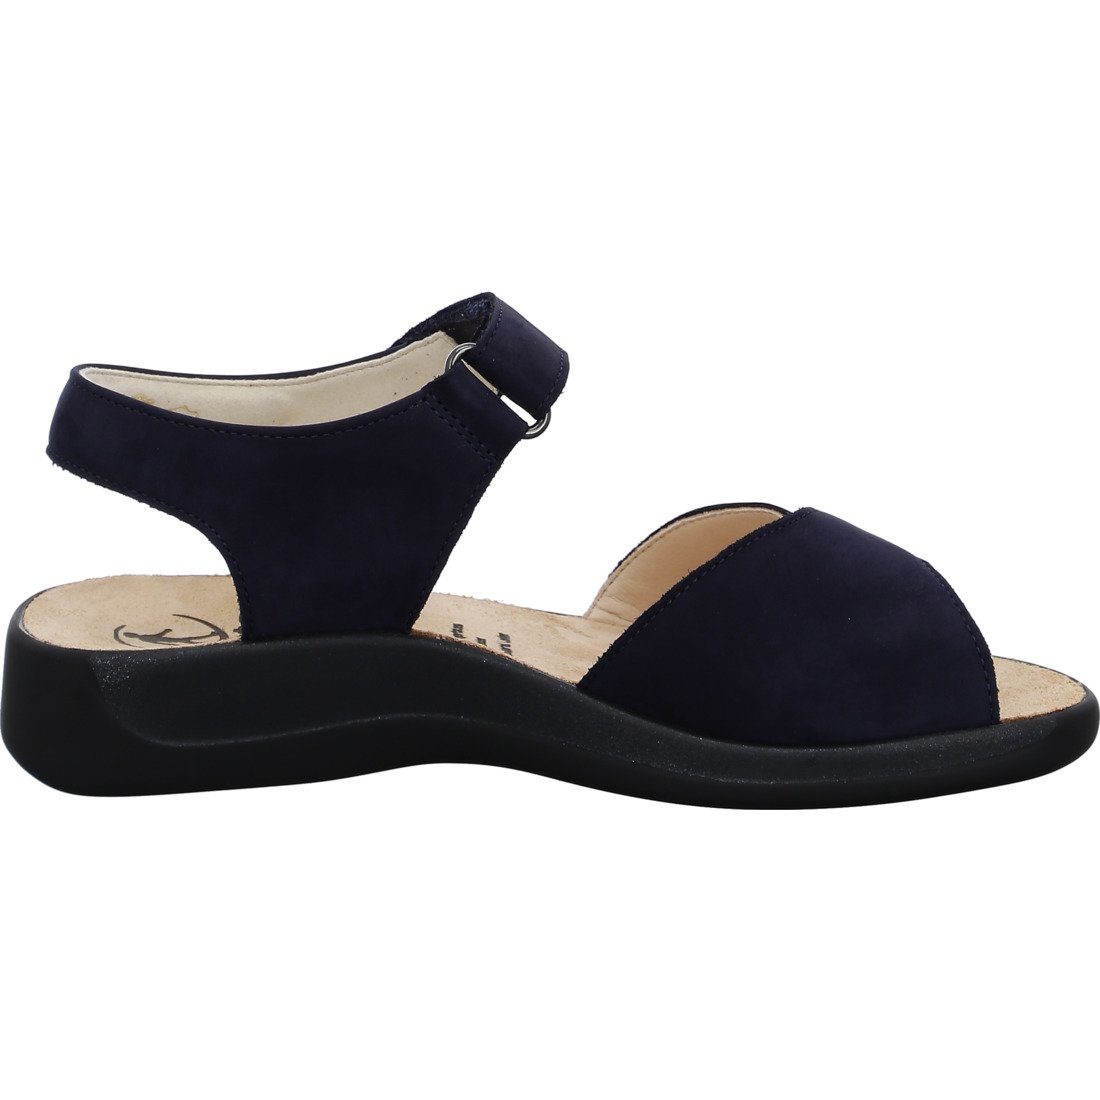 Ganter Schuhe, - Monica 048858 blau Nubuk Damen Sandalette Ganter Sandalette